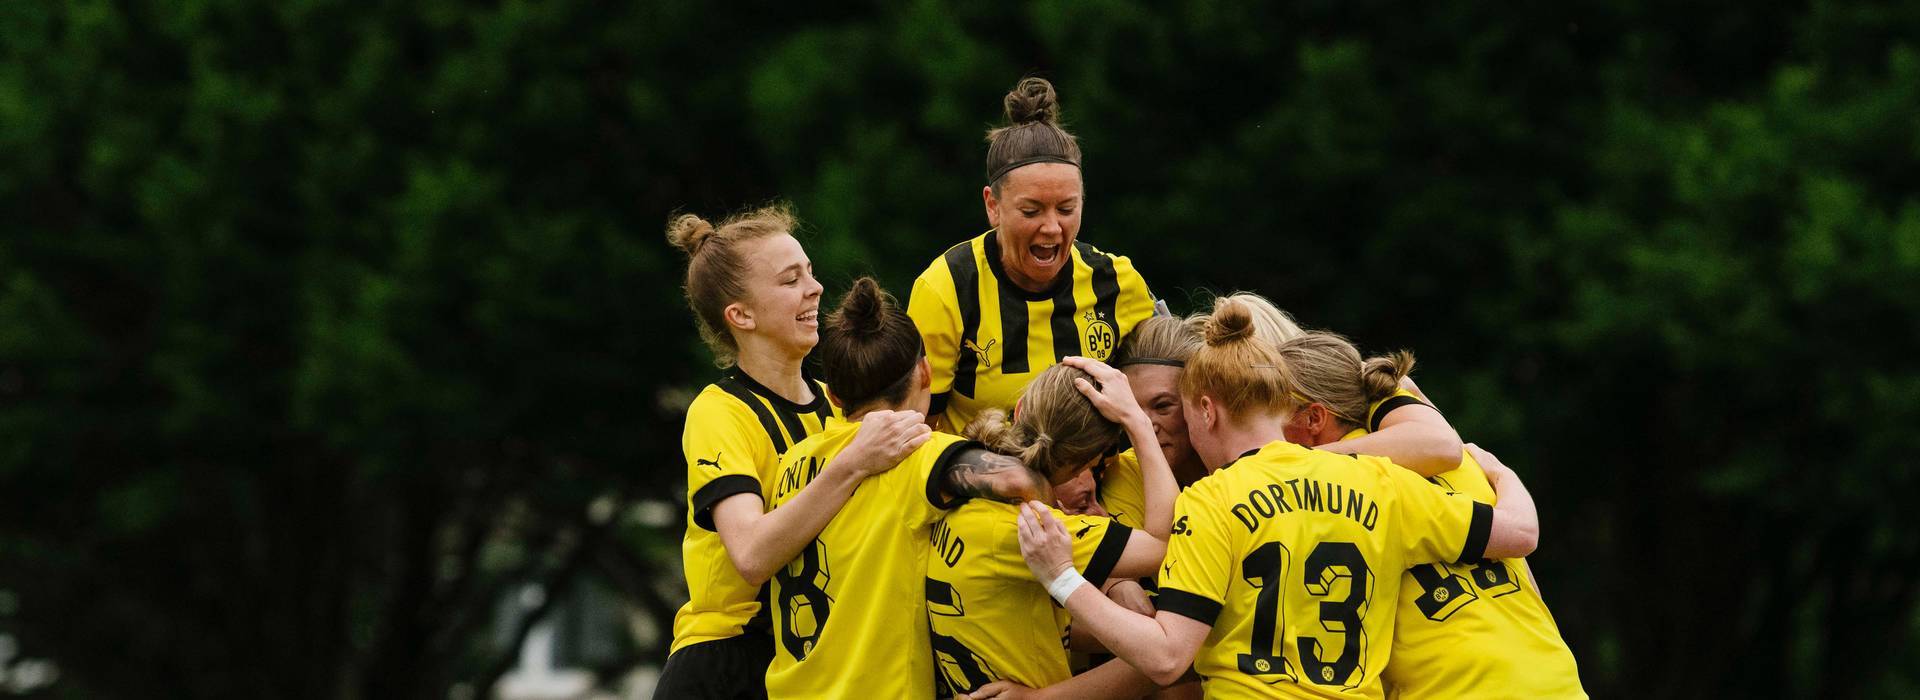 BVB women secure Bezirksliga promotion by beating Brechten 4-0!